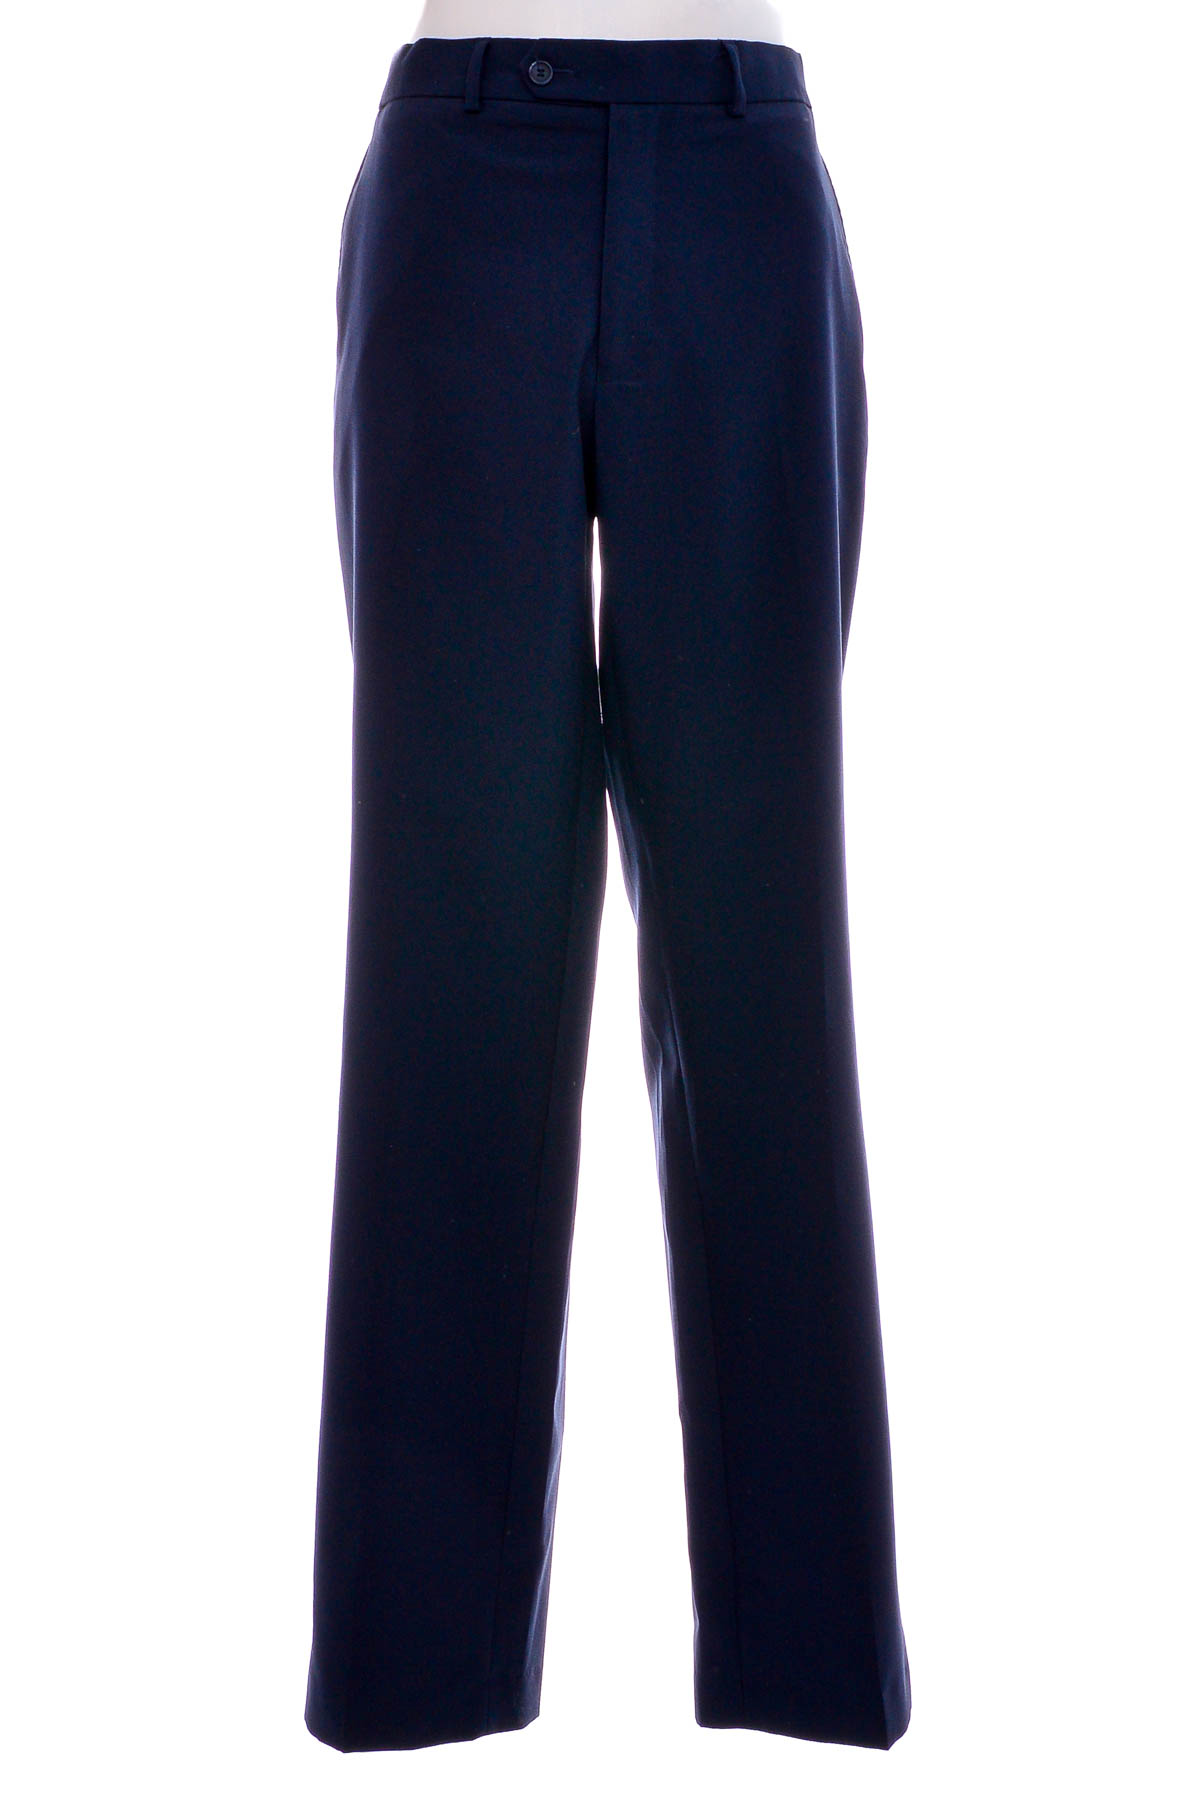 Men's trousers - Bpc Selection Bonprix Collection - 0